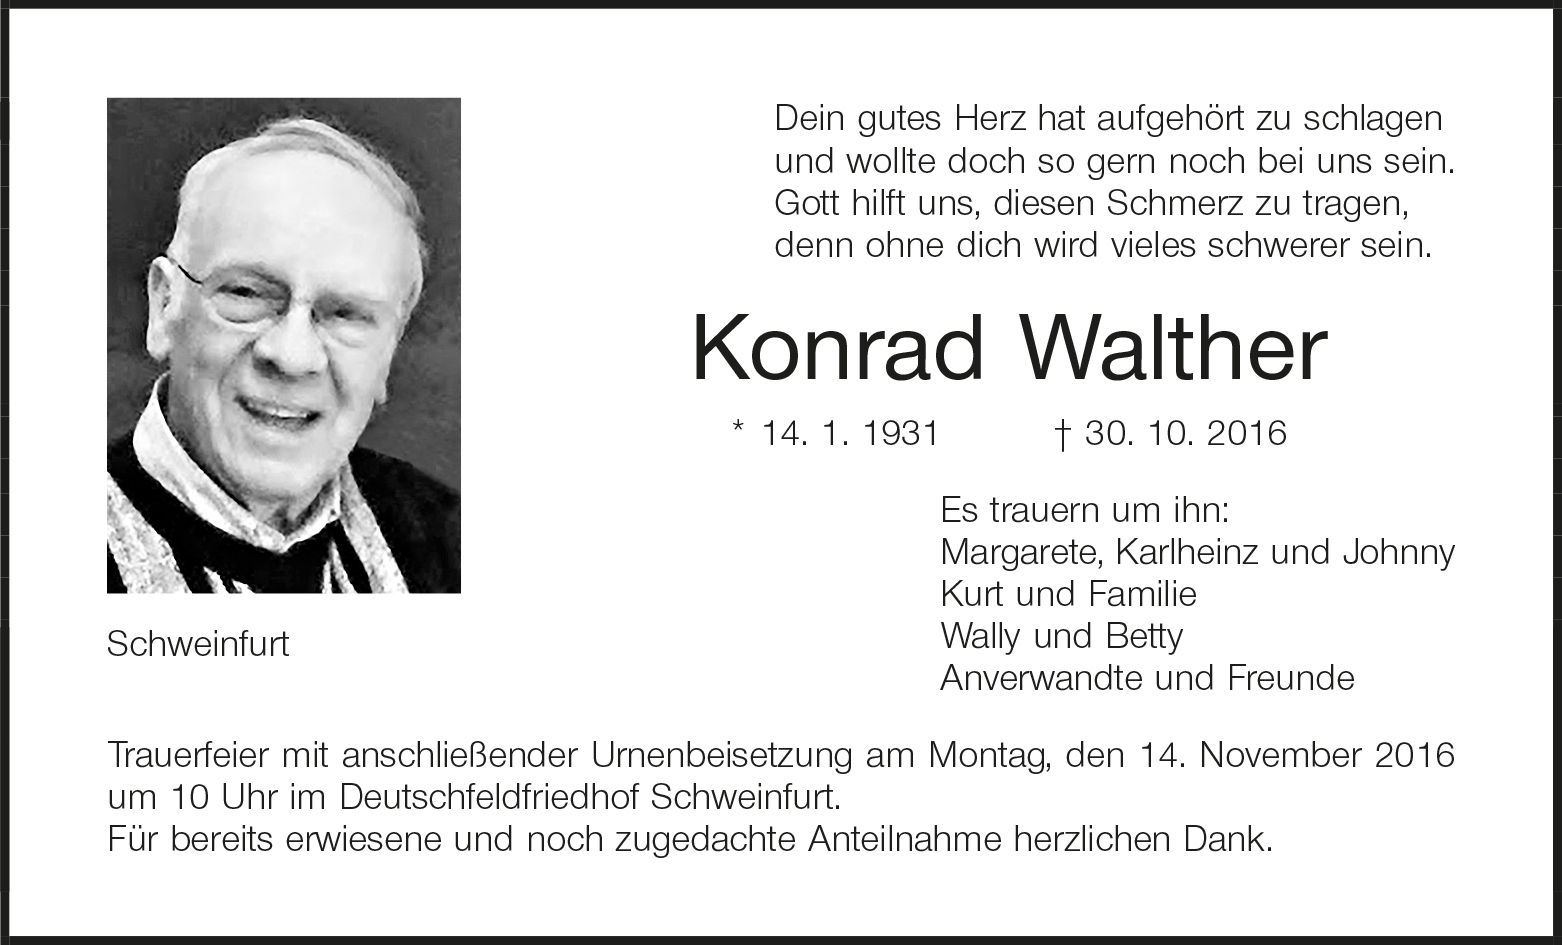 Konrad Walther